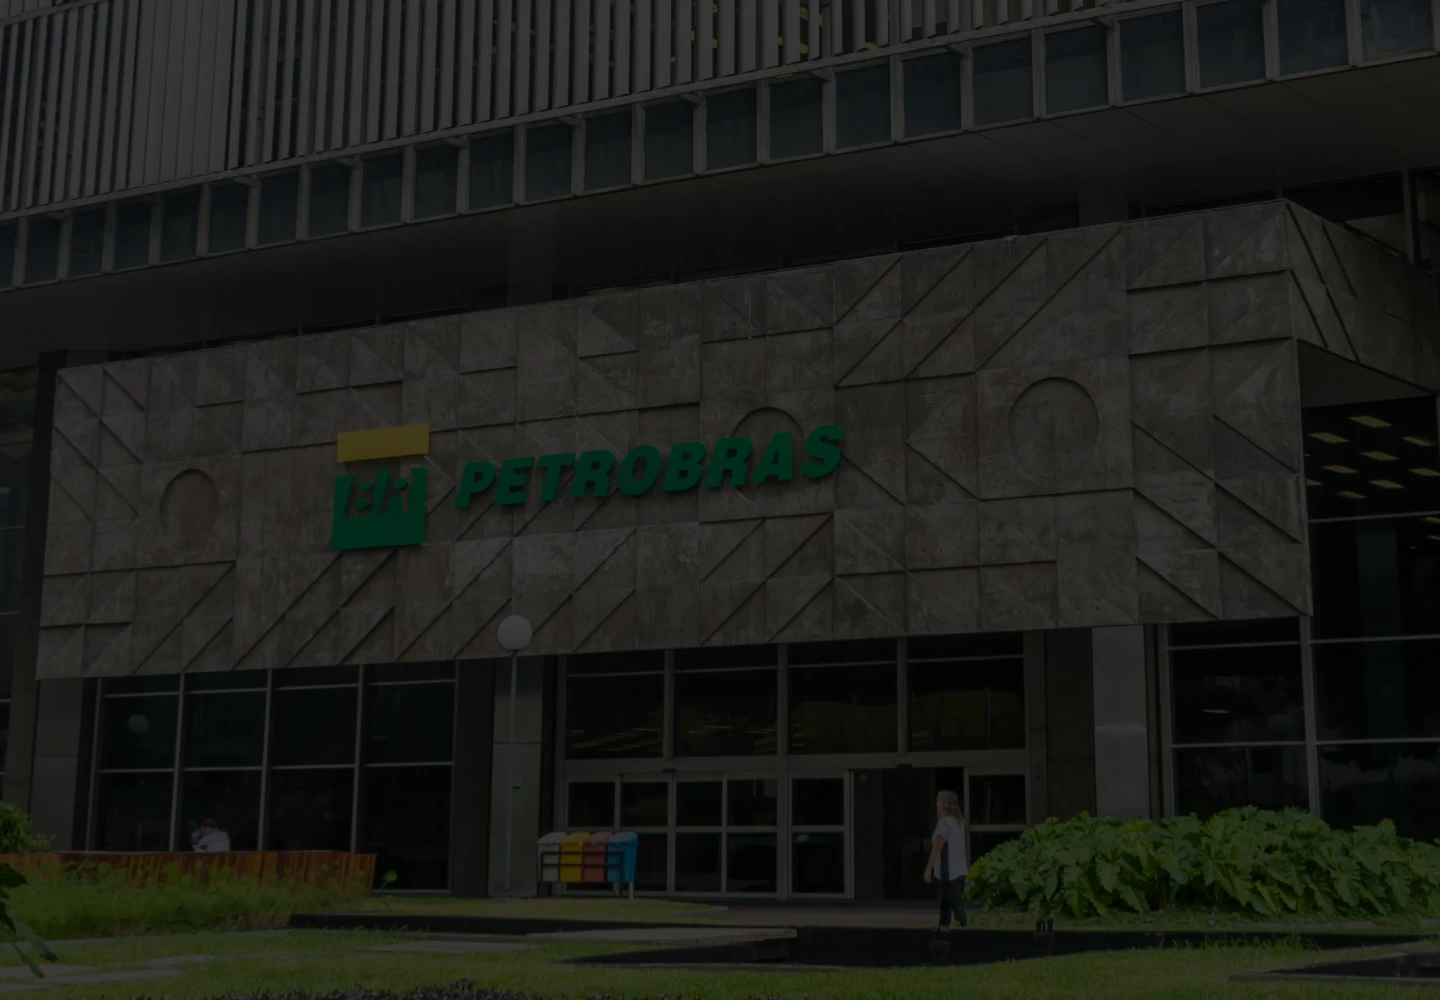 Fotografia diurna da fachada do Edise, edifício-sede da Petrobras.